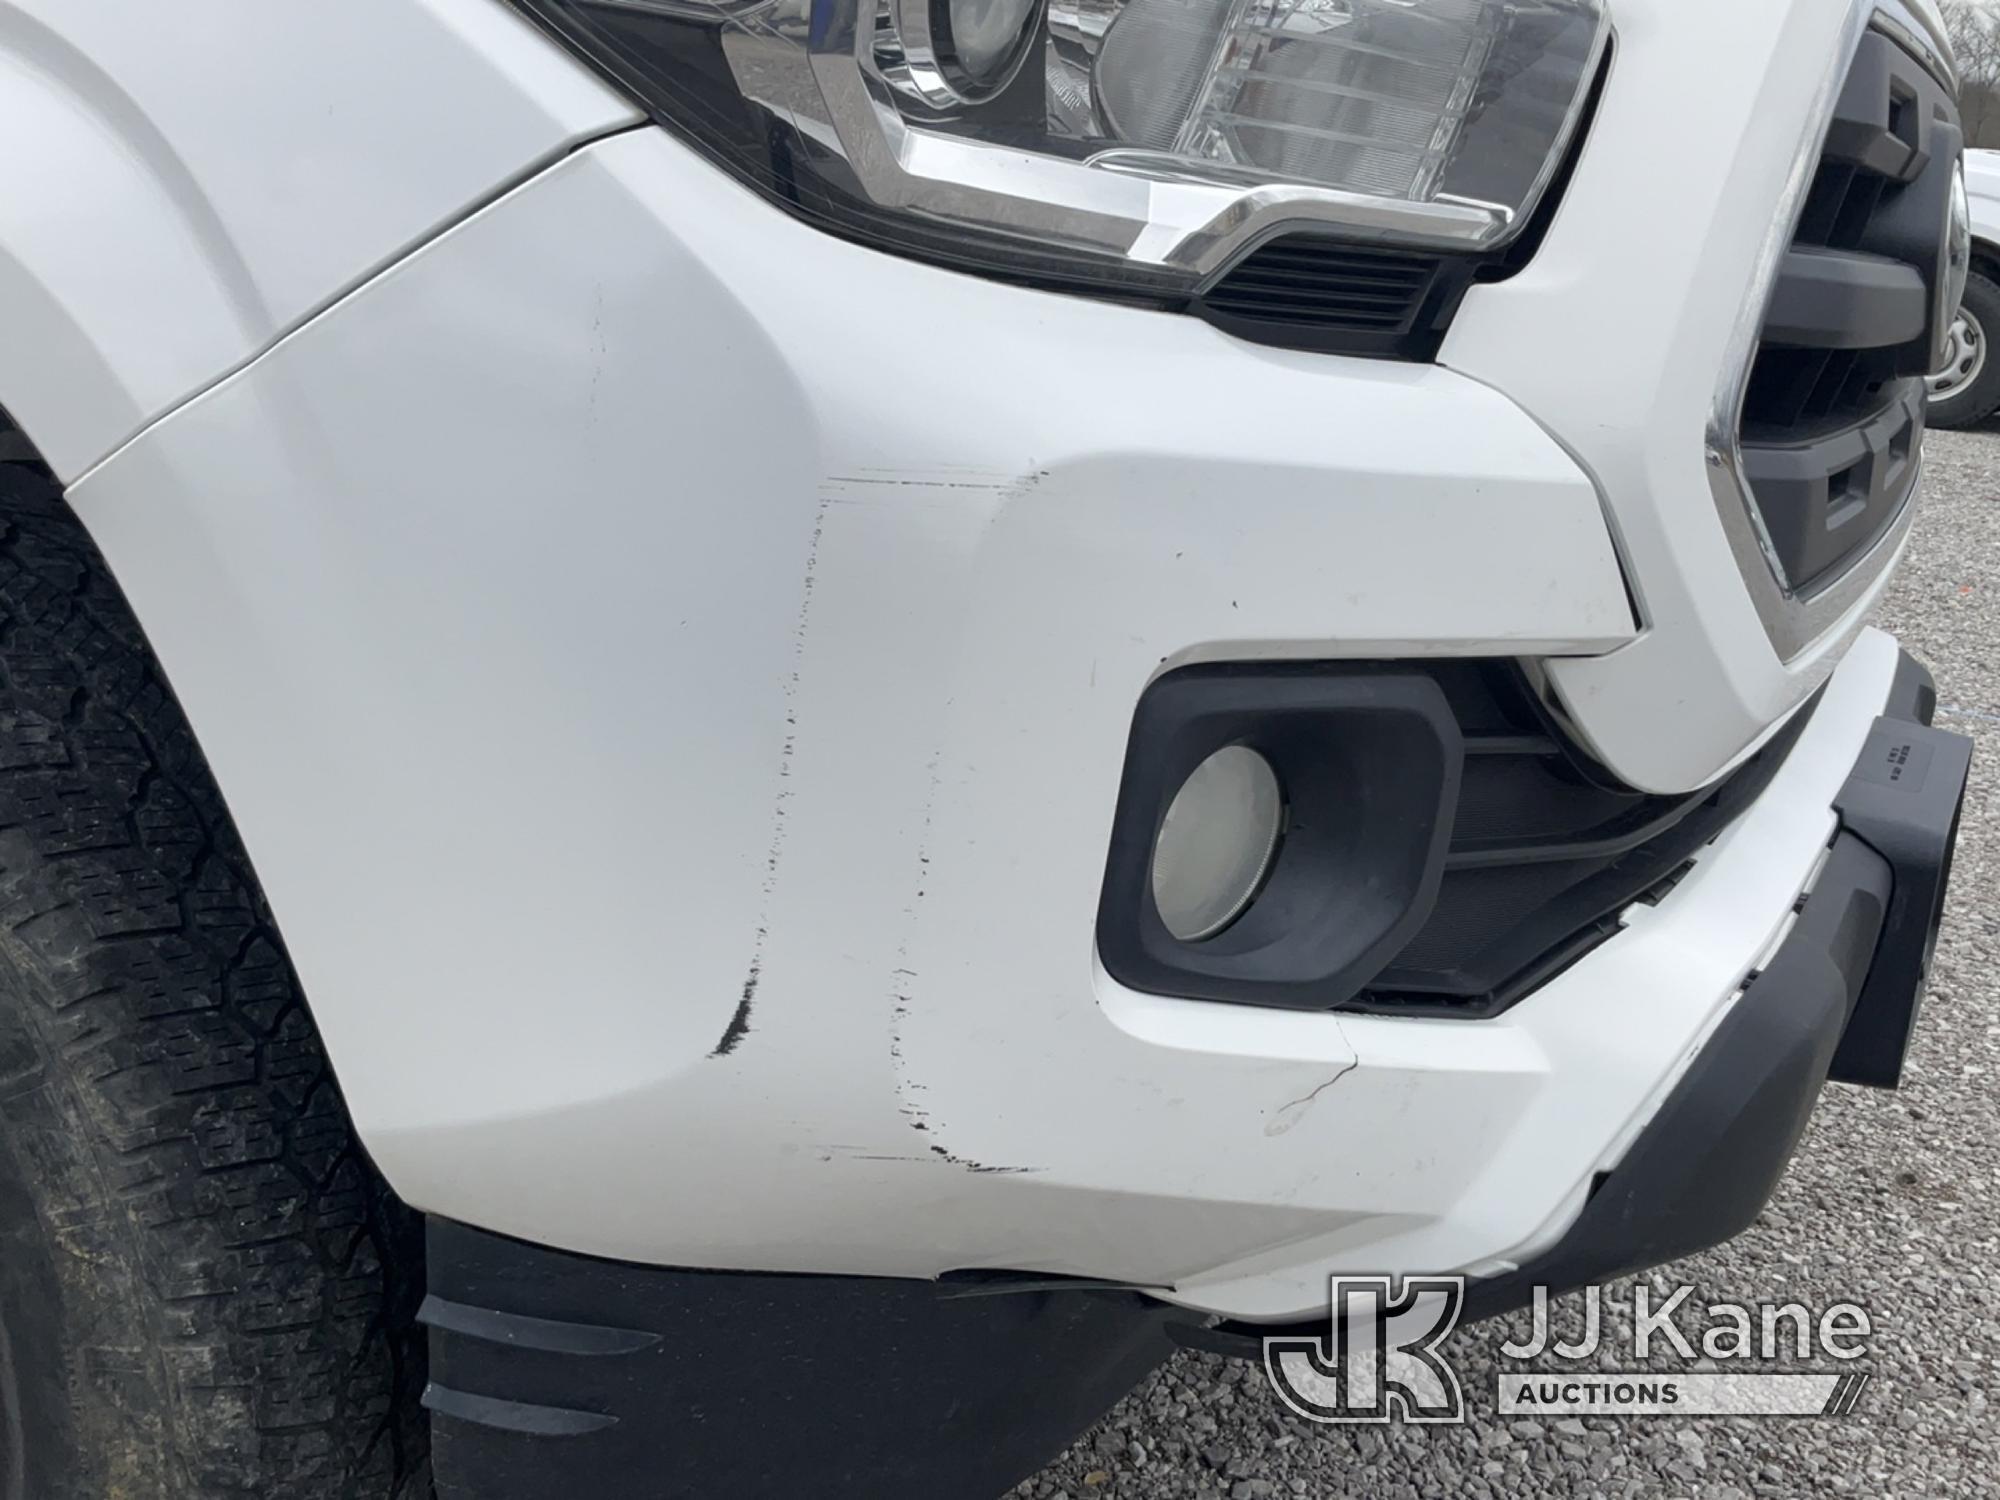 (Verona, KY) 2016 Toyota Tacoma 4x4 Extended-Cab Pickup Truck Runs & Moves) (Body Damage